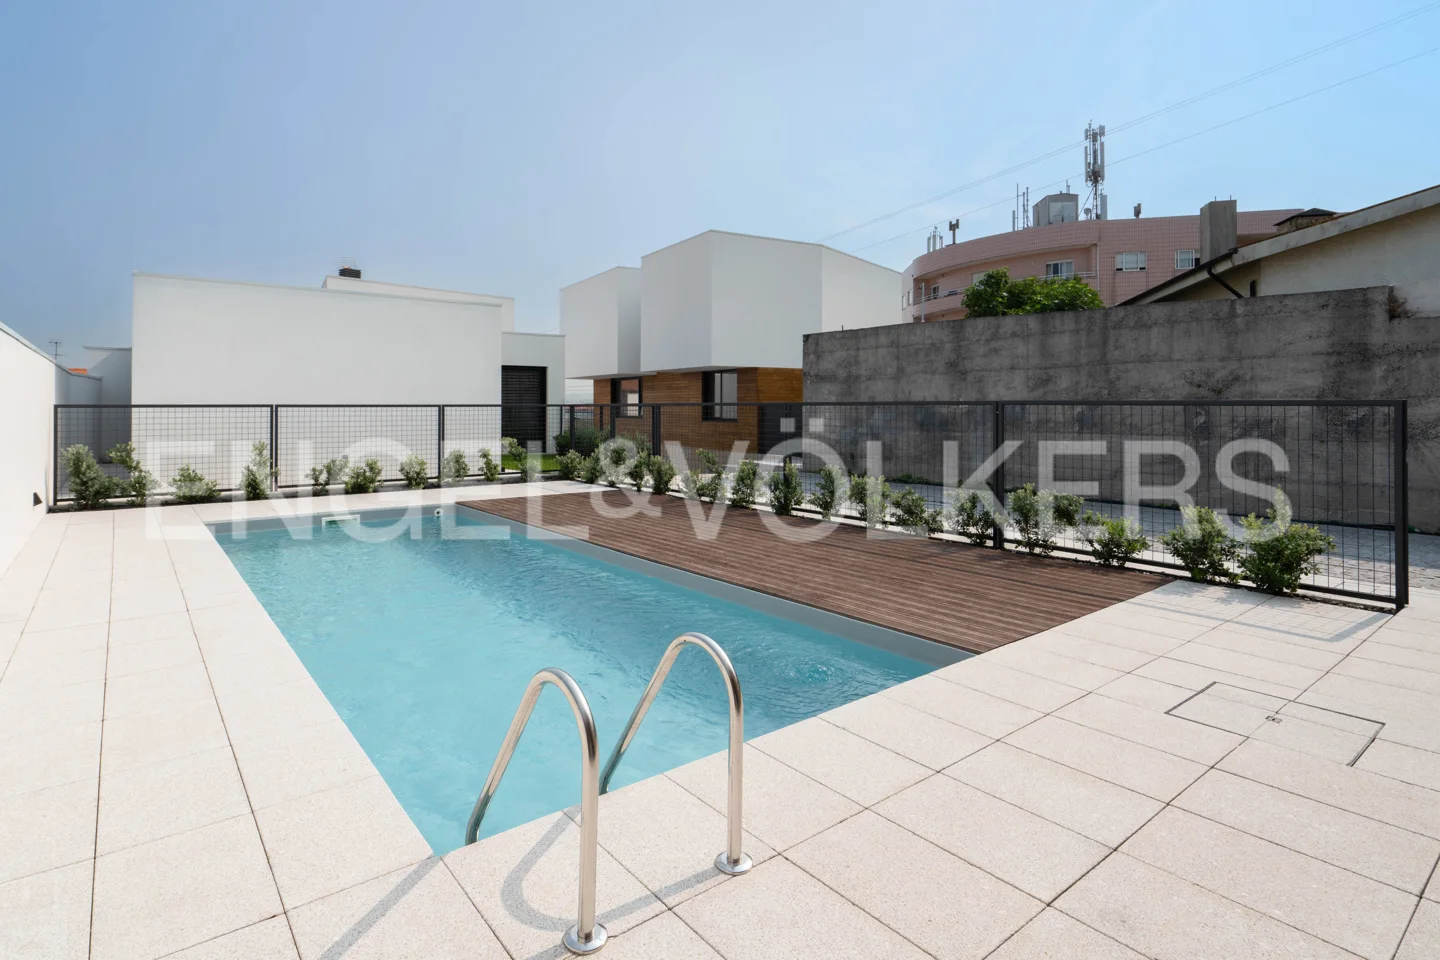 3 Bedroom New Villa in Vila Nova de Gaia with pool